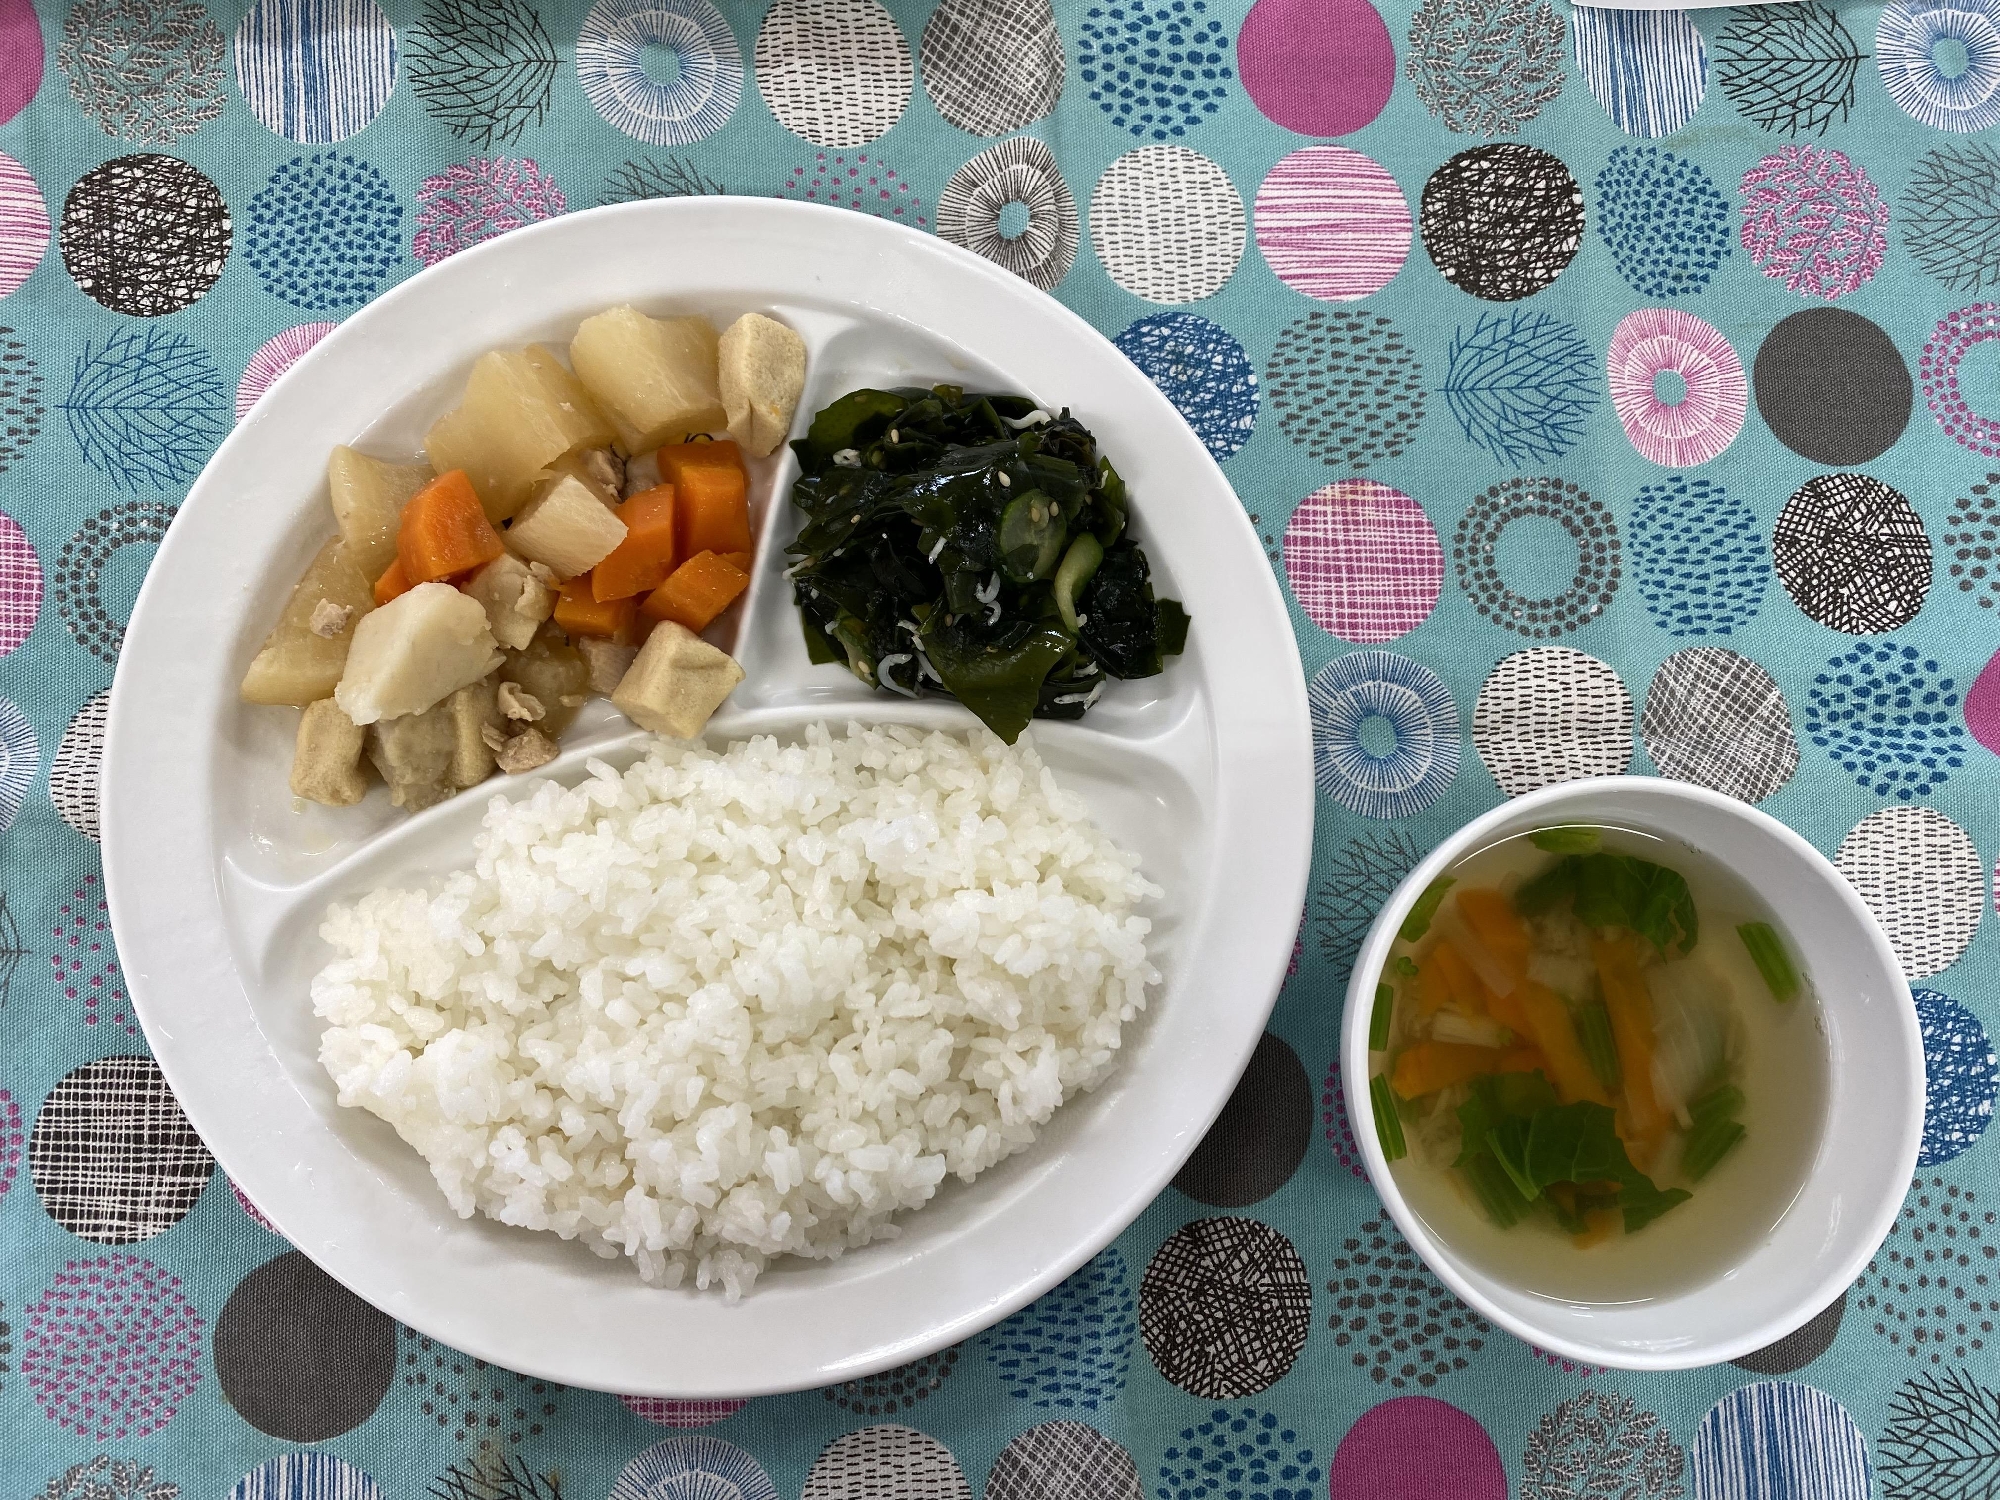 鶏肉と高野豆腐の煮物